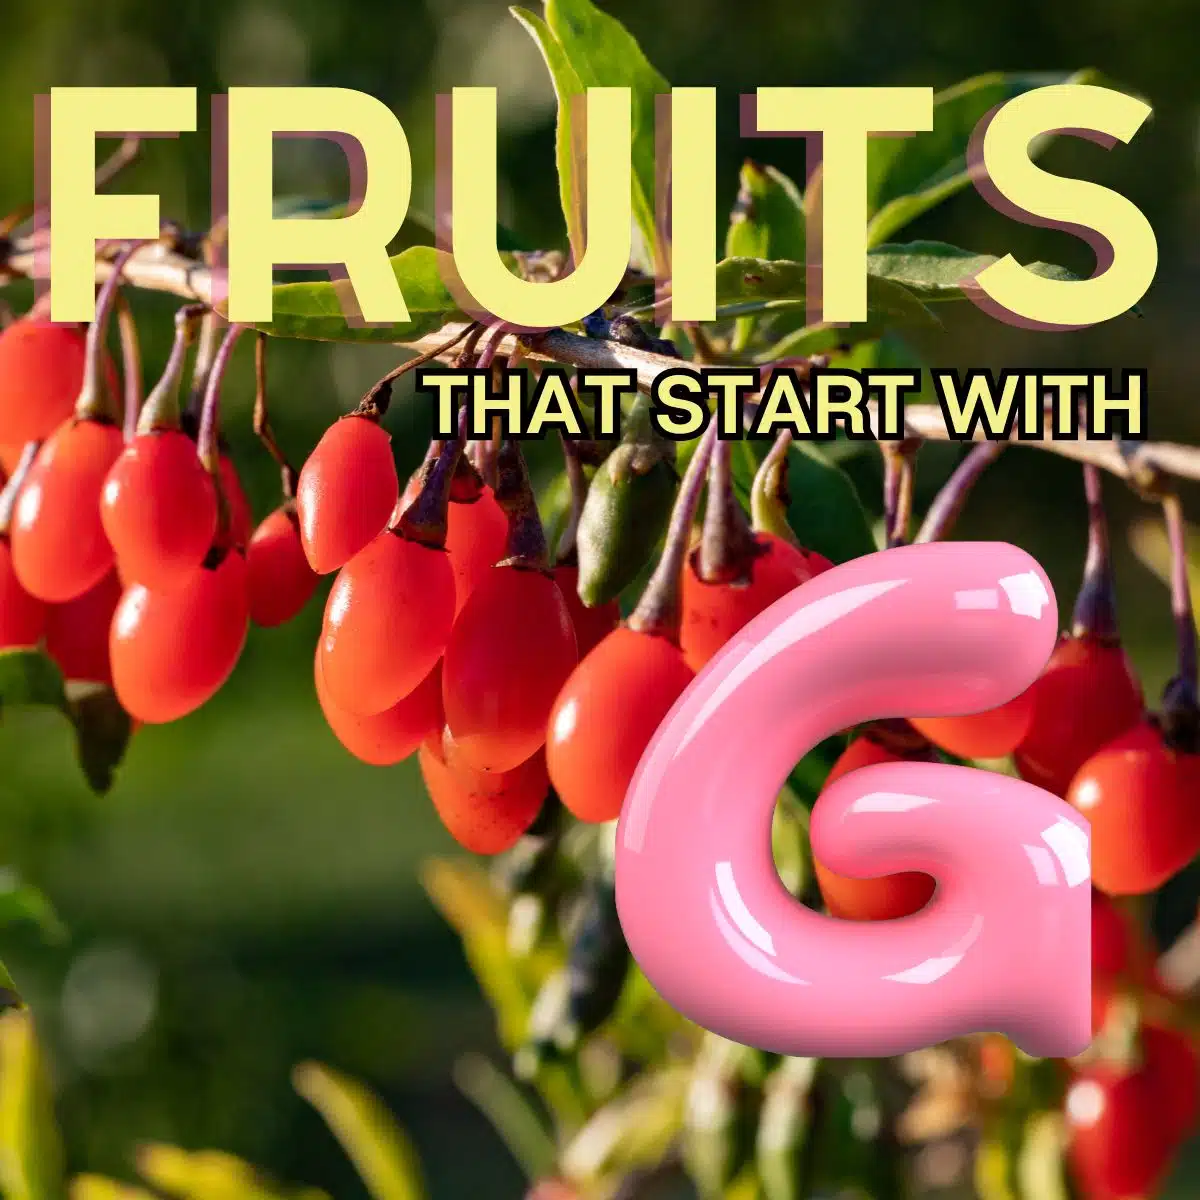 문자 G로 시작하는 과일의 정사각형 이미지입니다.